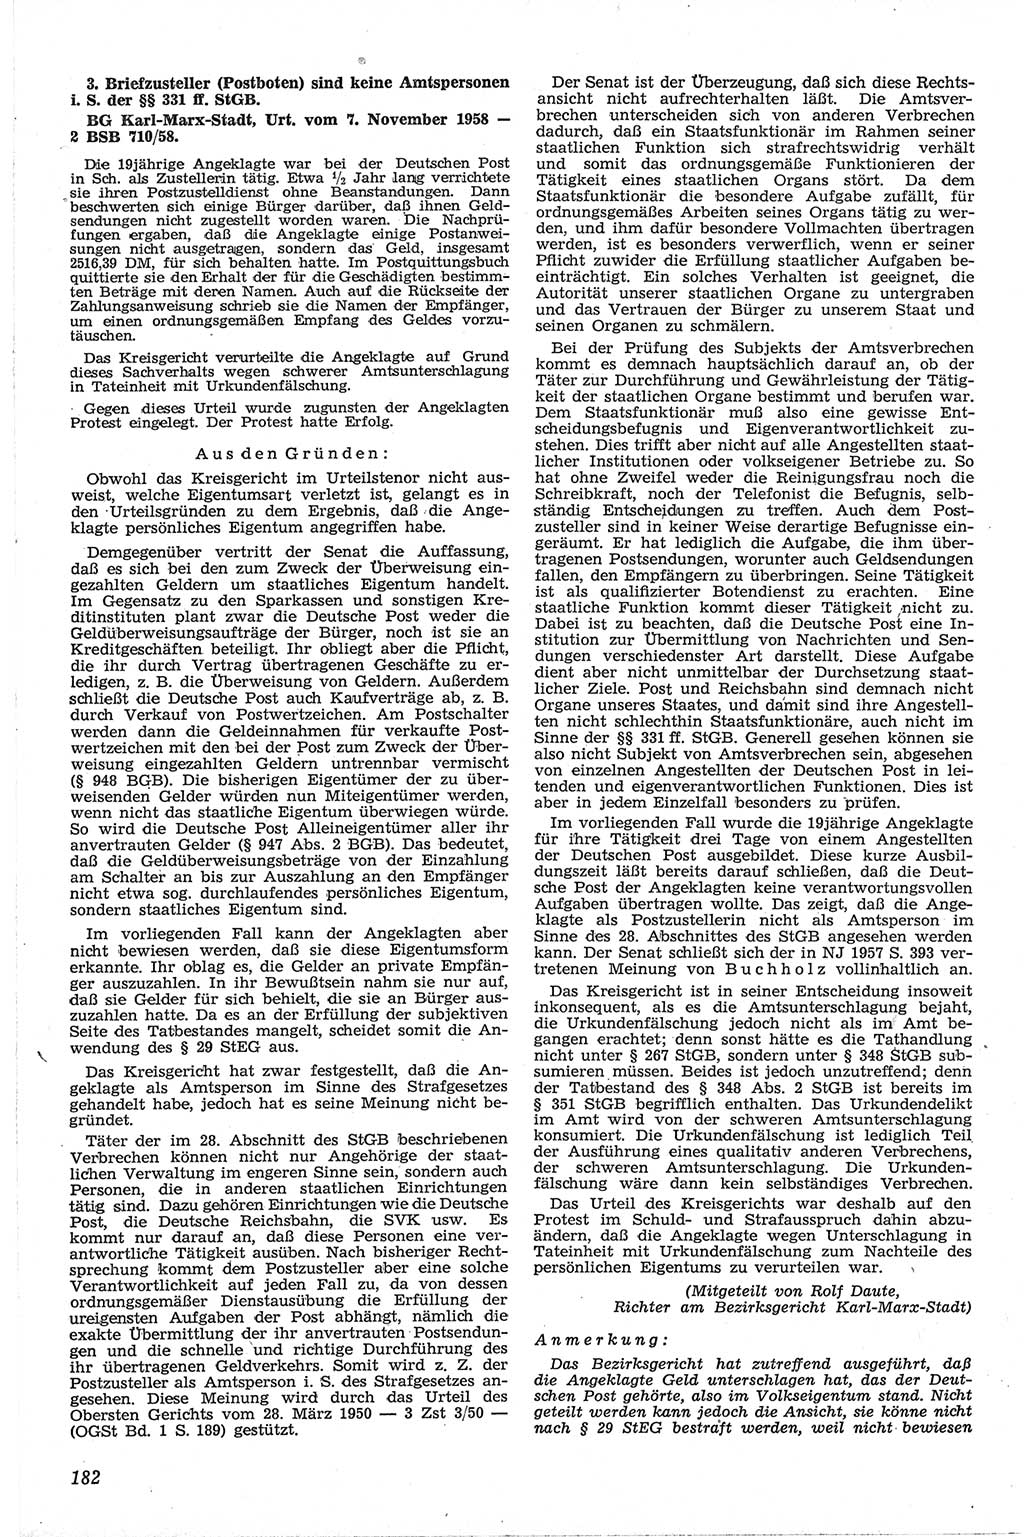 Neue Justiz (NJ), Zeitschrift für Recht und Rechtswissenschaft [Deutsche Demokratische Republik (DDR)], 13. Jahrgang 1959, Seite 182 (NJ DDR 1959, S. 182)